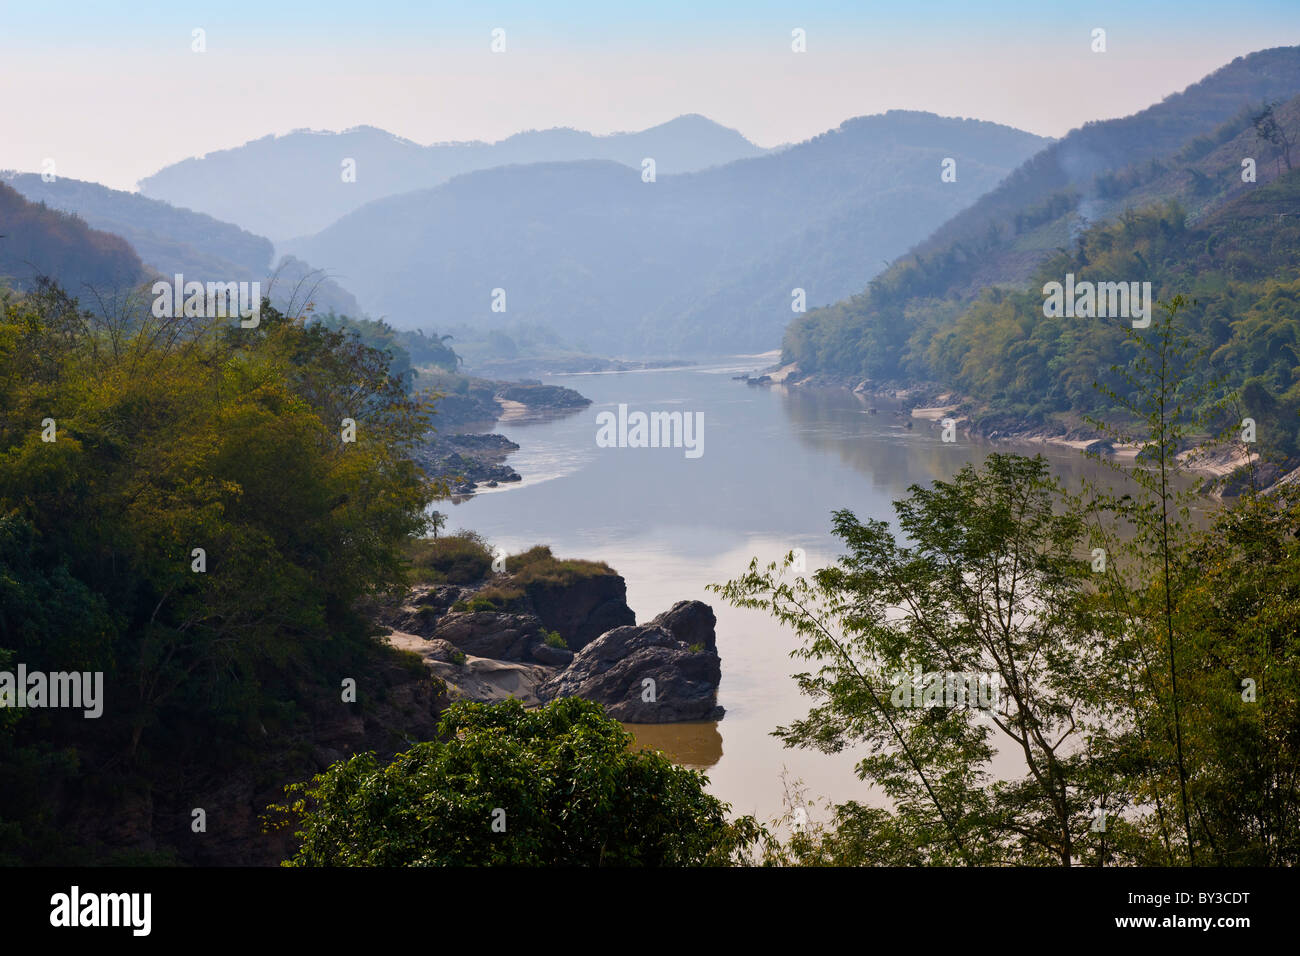 Le Lancang ou Mekong River, près de Jinghong, Xishuangbanna, Province du Yunnan, région, République populaire de Chine. JMH4238 Banque D'Images